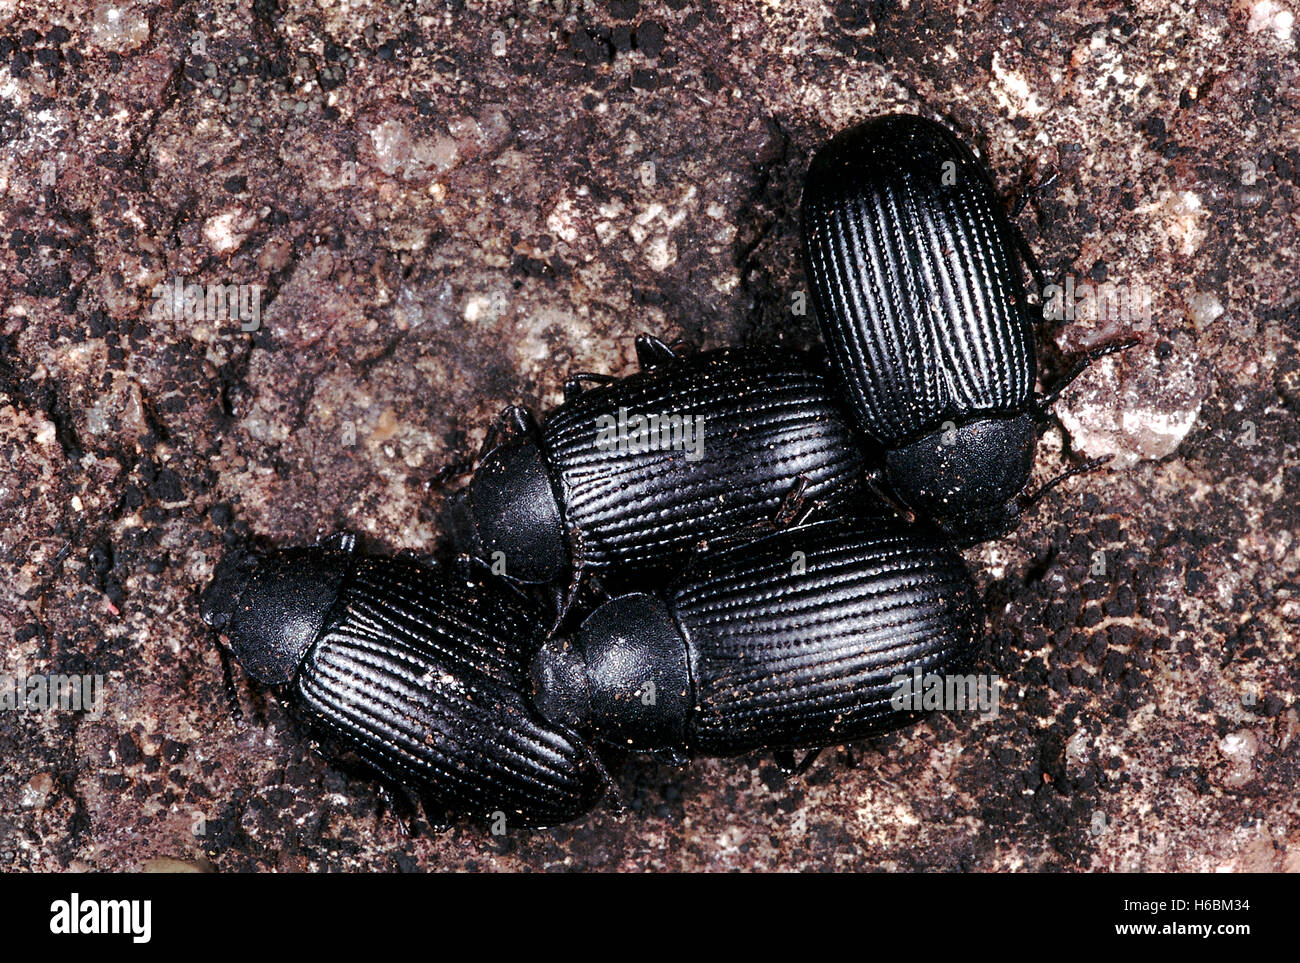 Darkling les coléoptères. Ces petits coléoptères sont habituellement trouvés sous les roches, dans les zones rocheuses dénudées. Banque D'Images